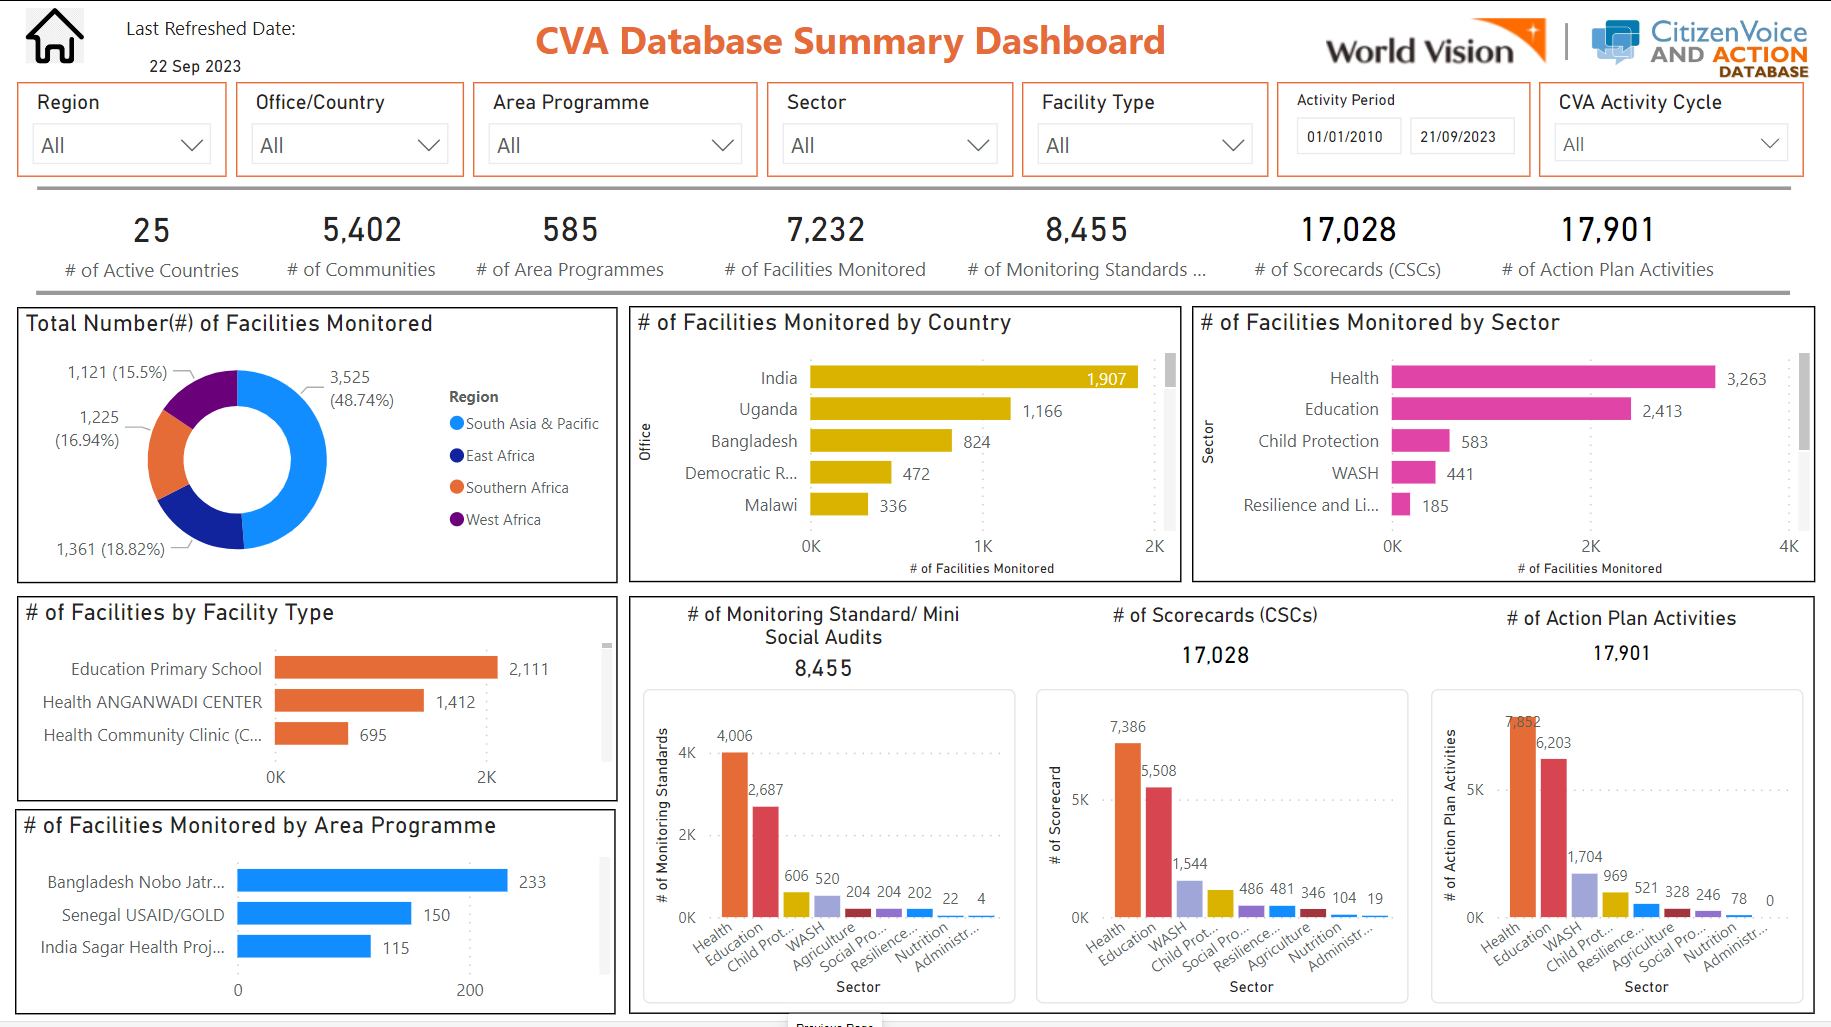 World Vision's CVA dashboard